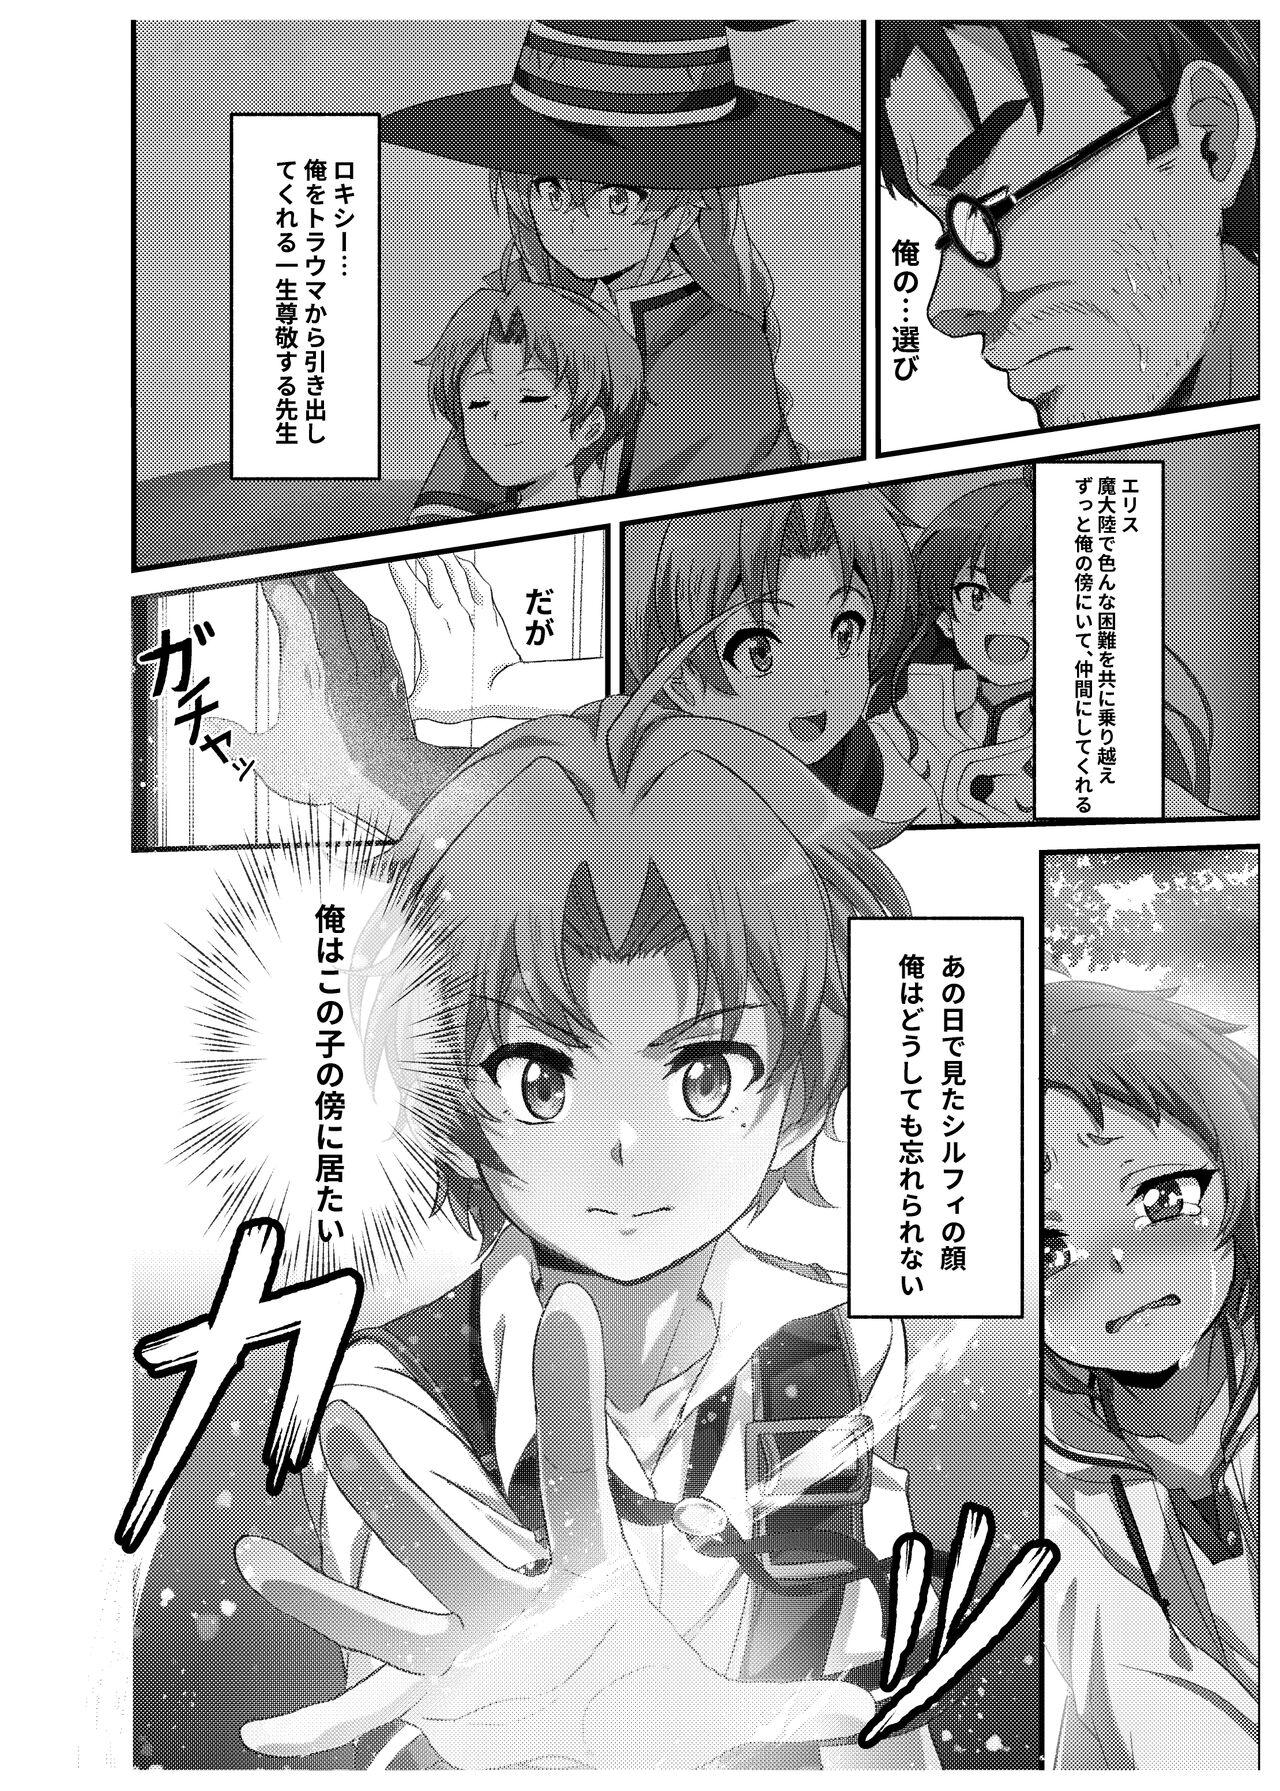 Chupando シルフィのタイムラインになったら - Mushoku tensei Coroa - Page 6